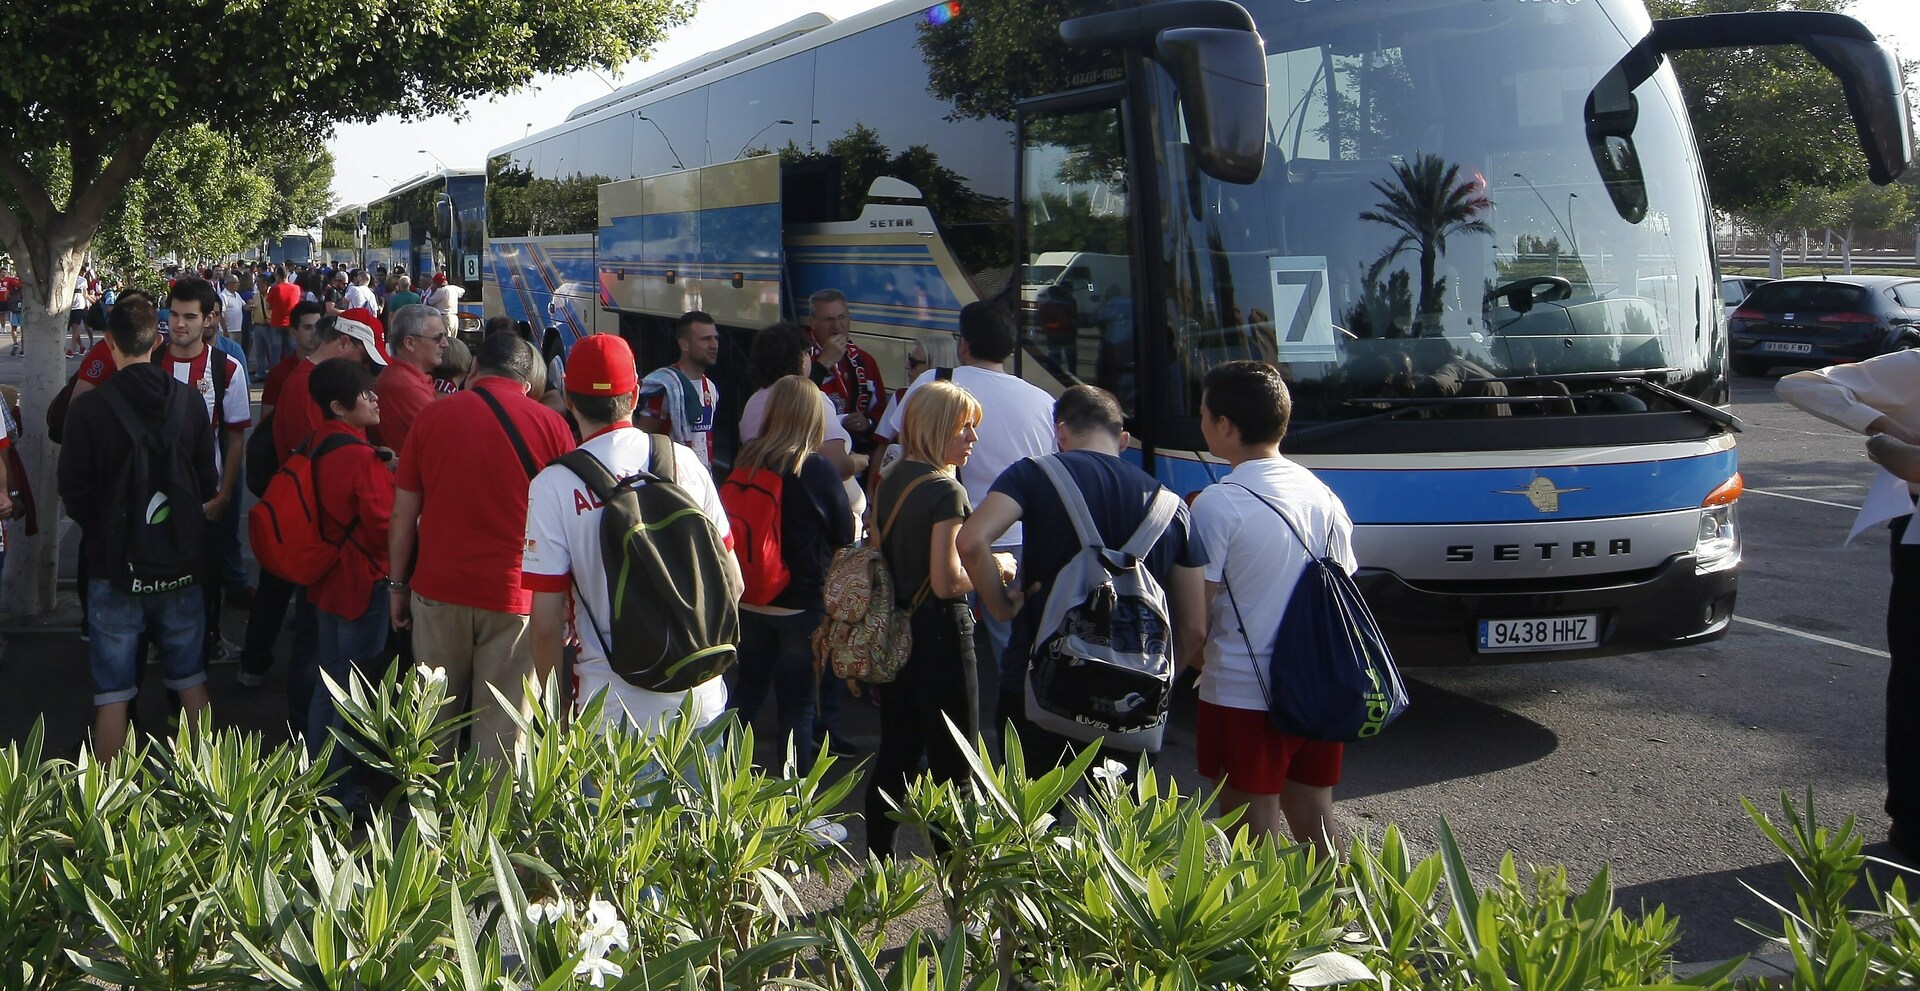 Entradas a 25 euros y autobuses gratis para los abonados ante la cita frente al Espanyol